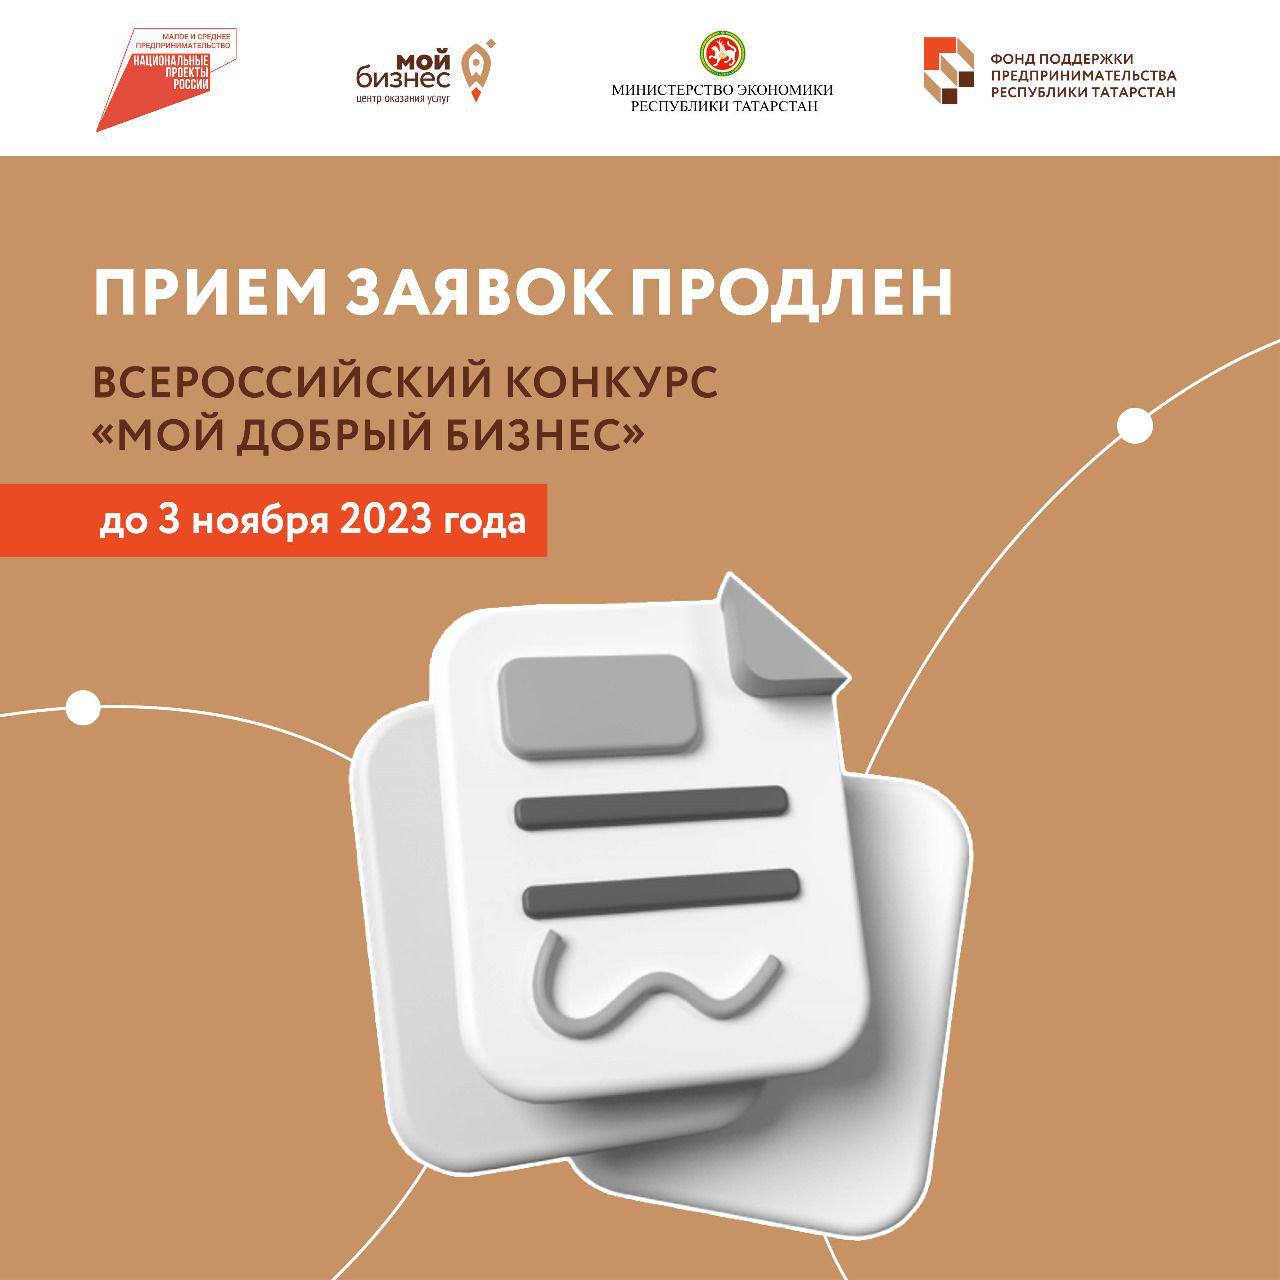 Прием заявок на Всероссийский конкурс «Мой добрый бизнес» продлен до 3 ноября 2023 года.